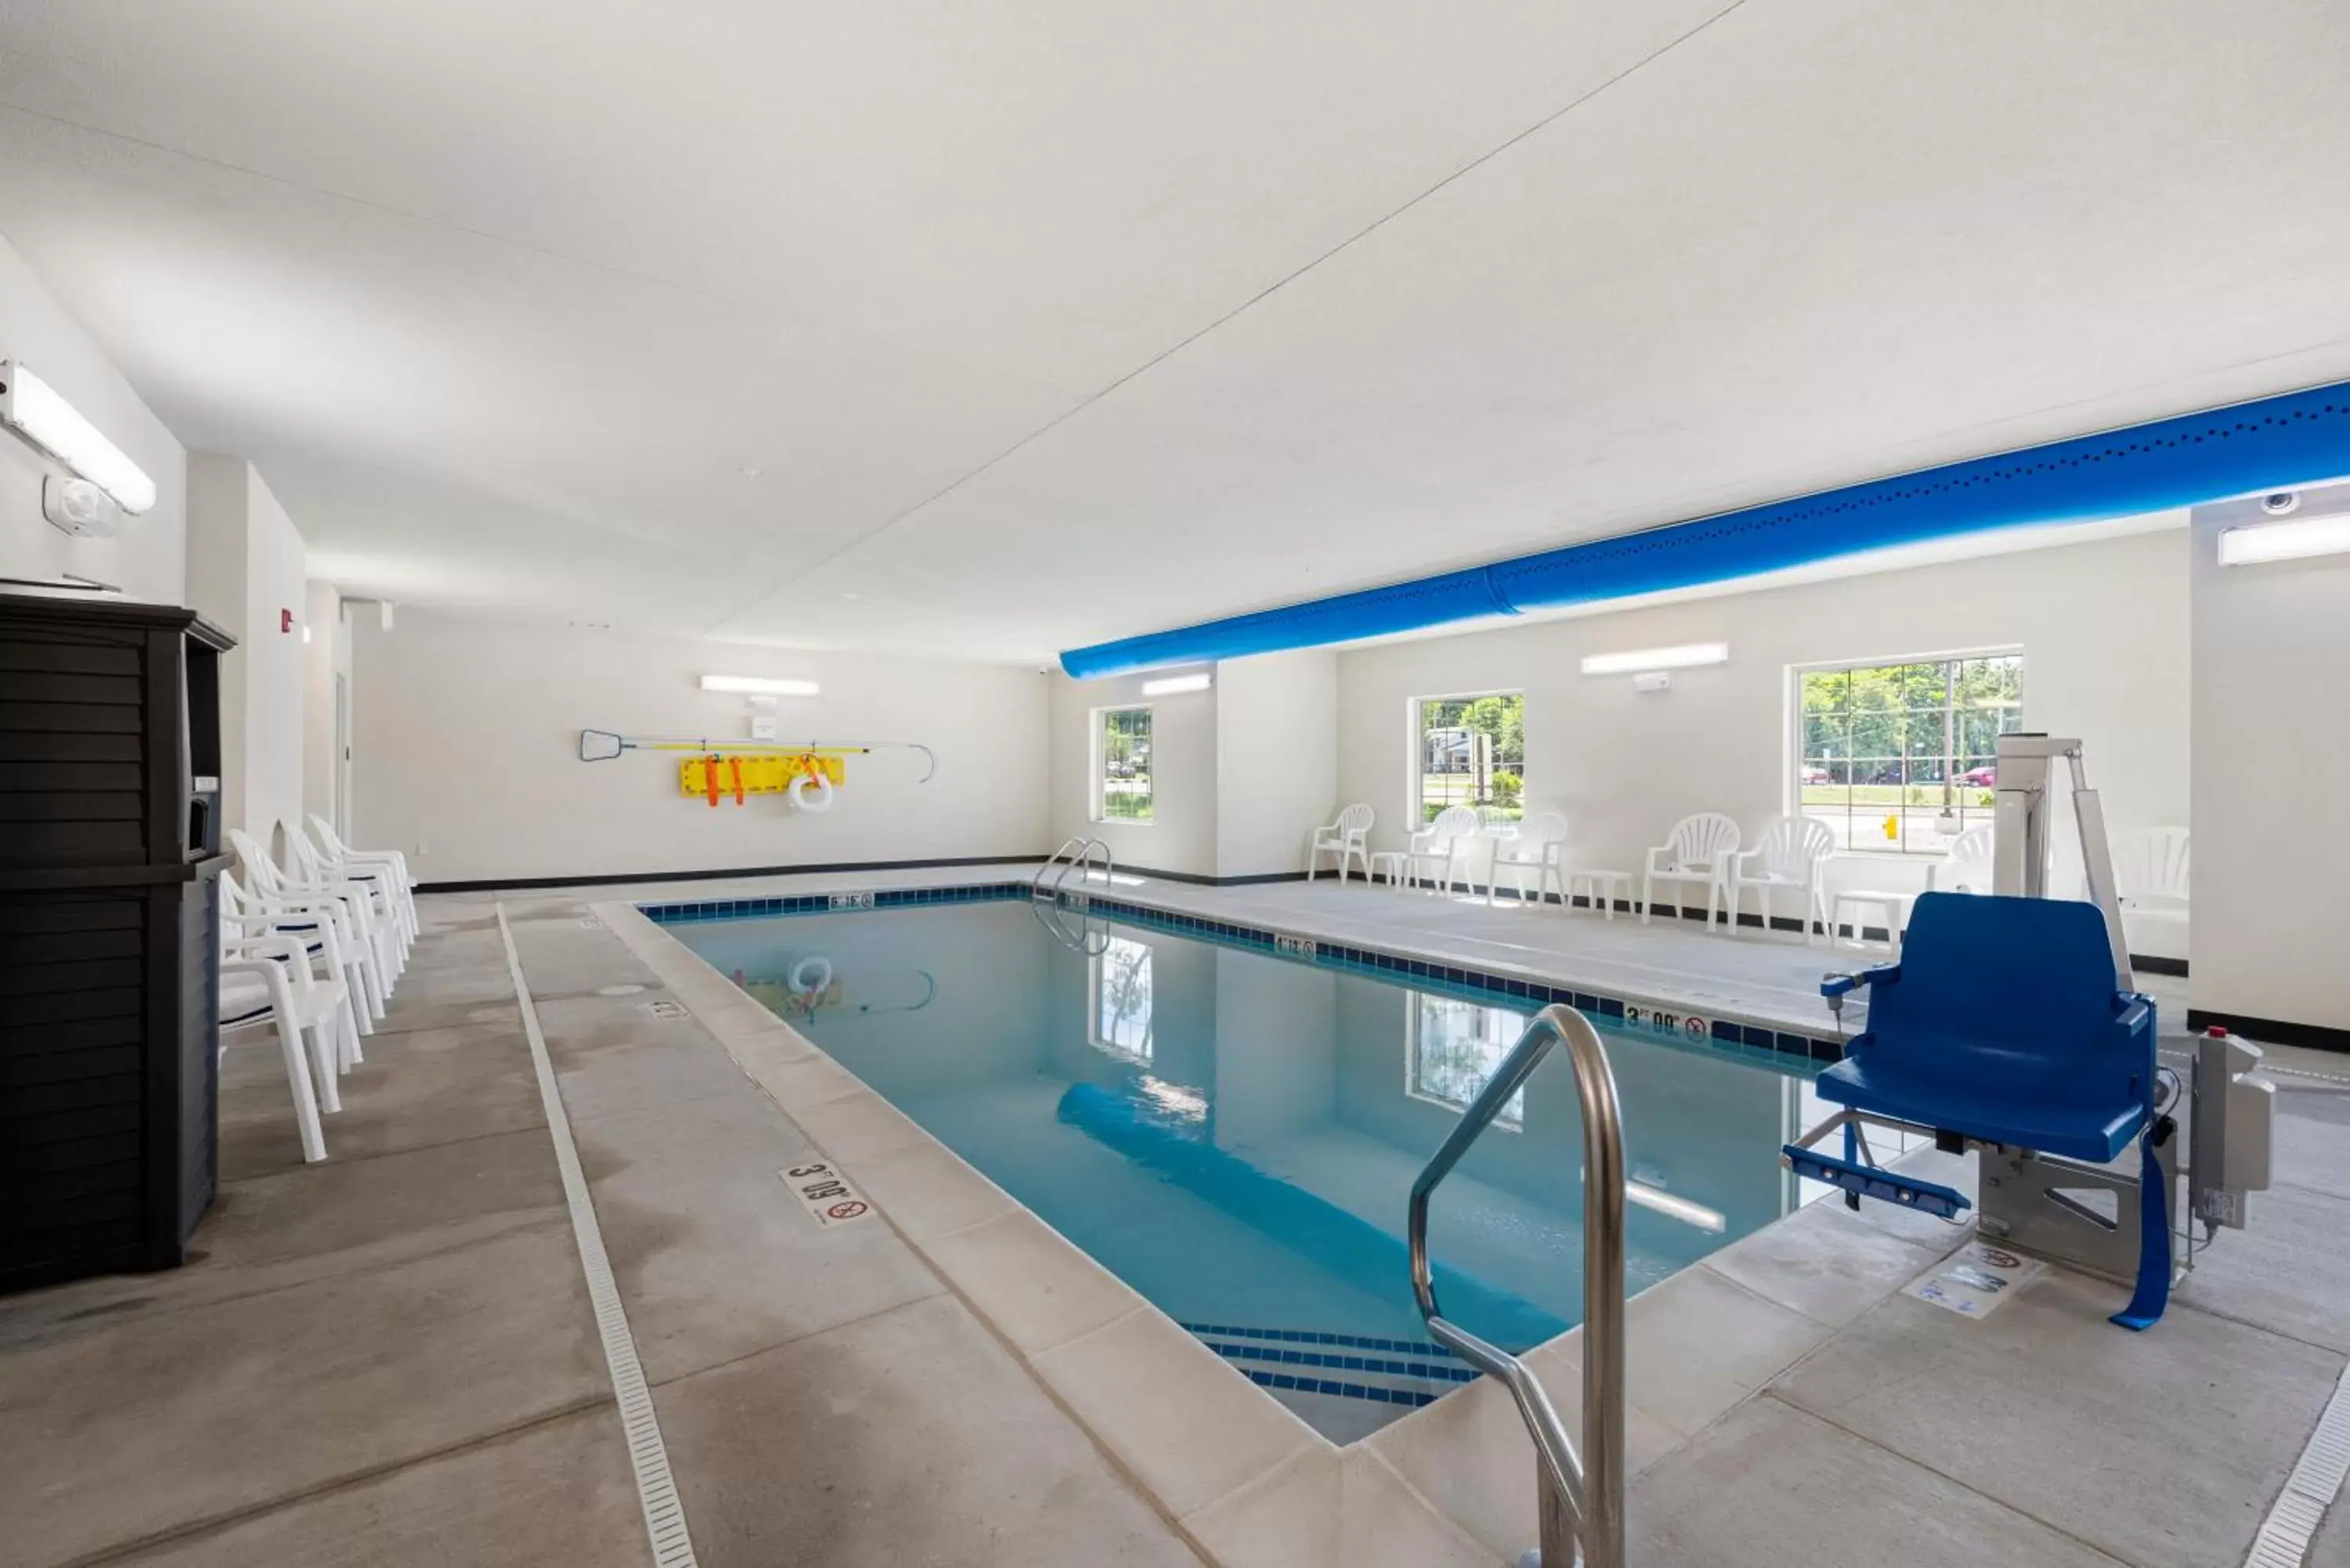 Swimming Pool in Cobblestone Hotel & Suites - Urbana